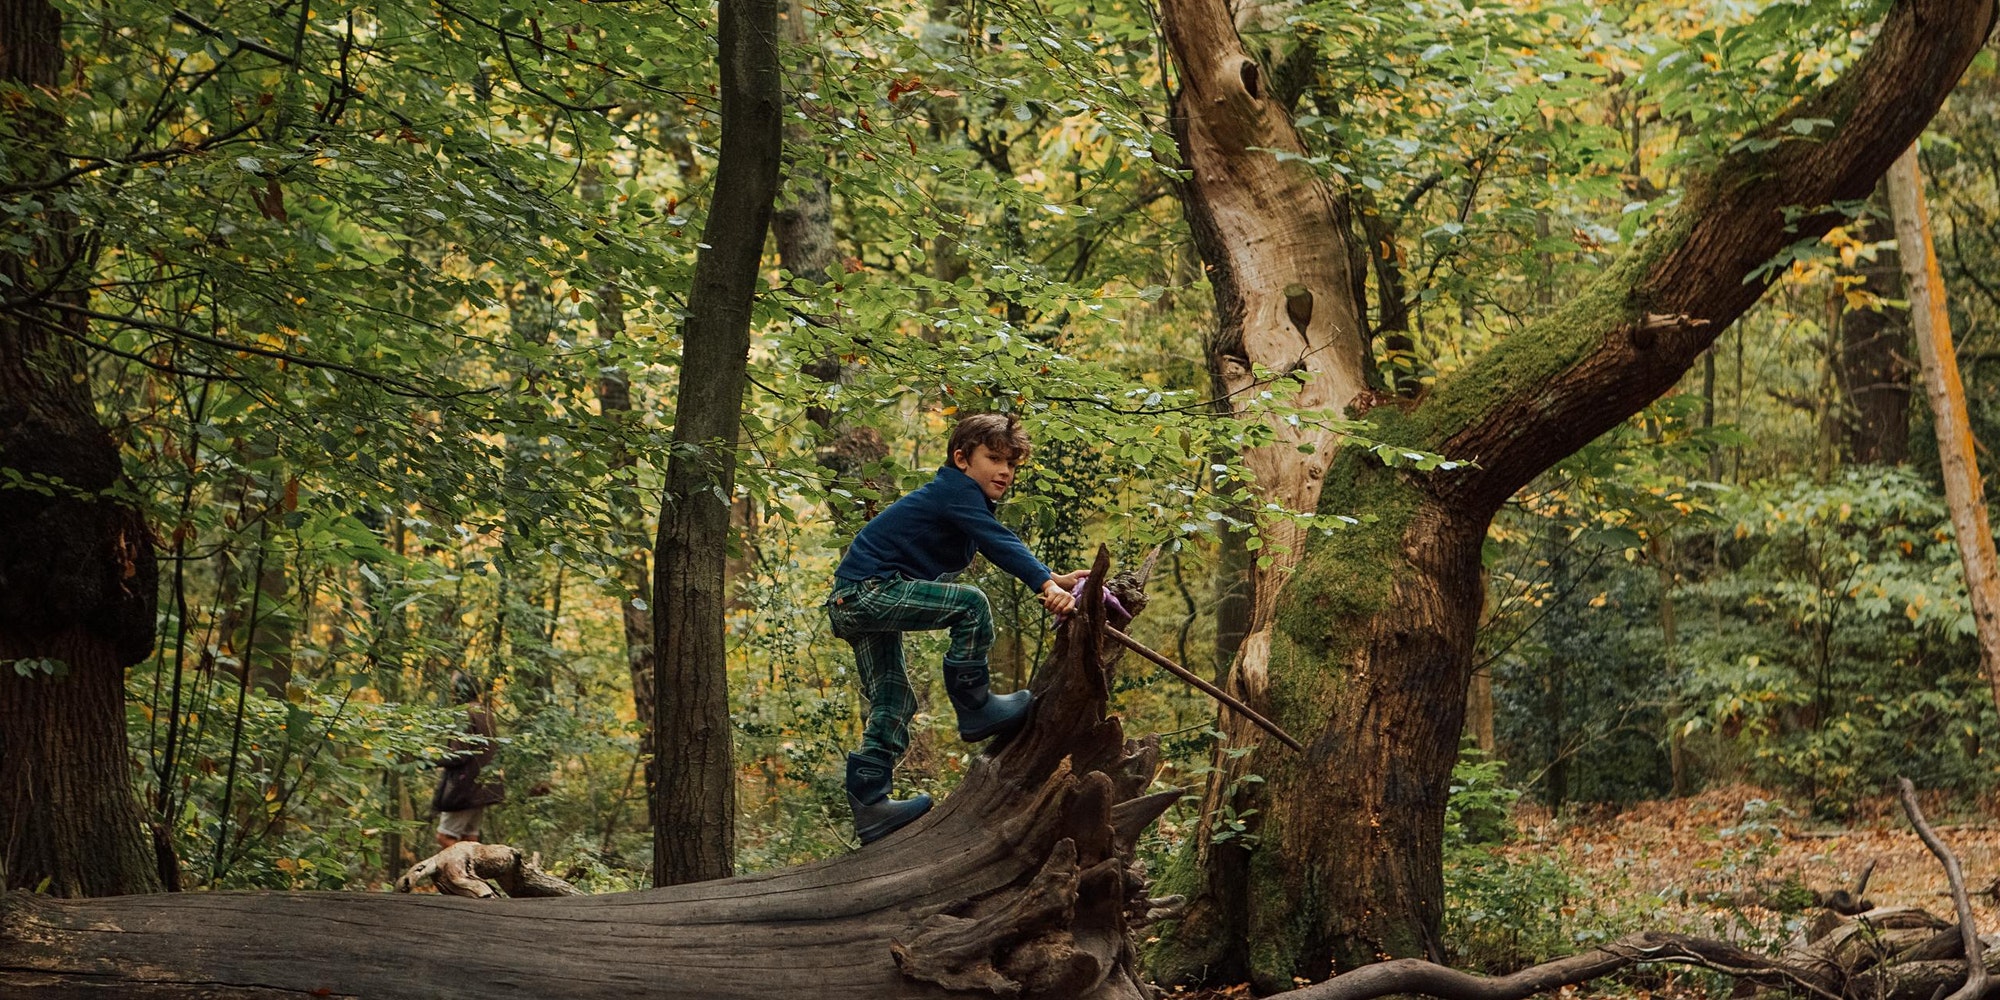 Young boy climbs a fallen tree stump